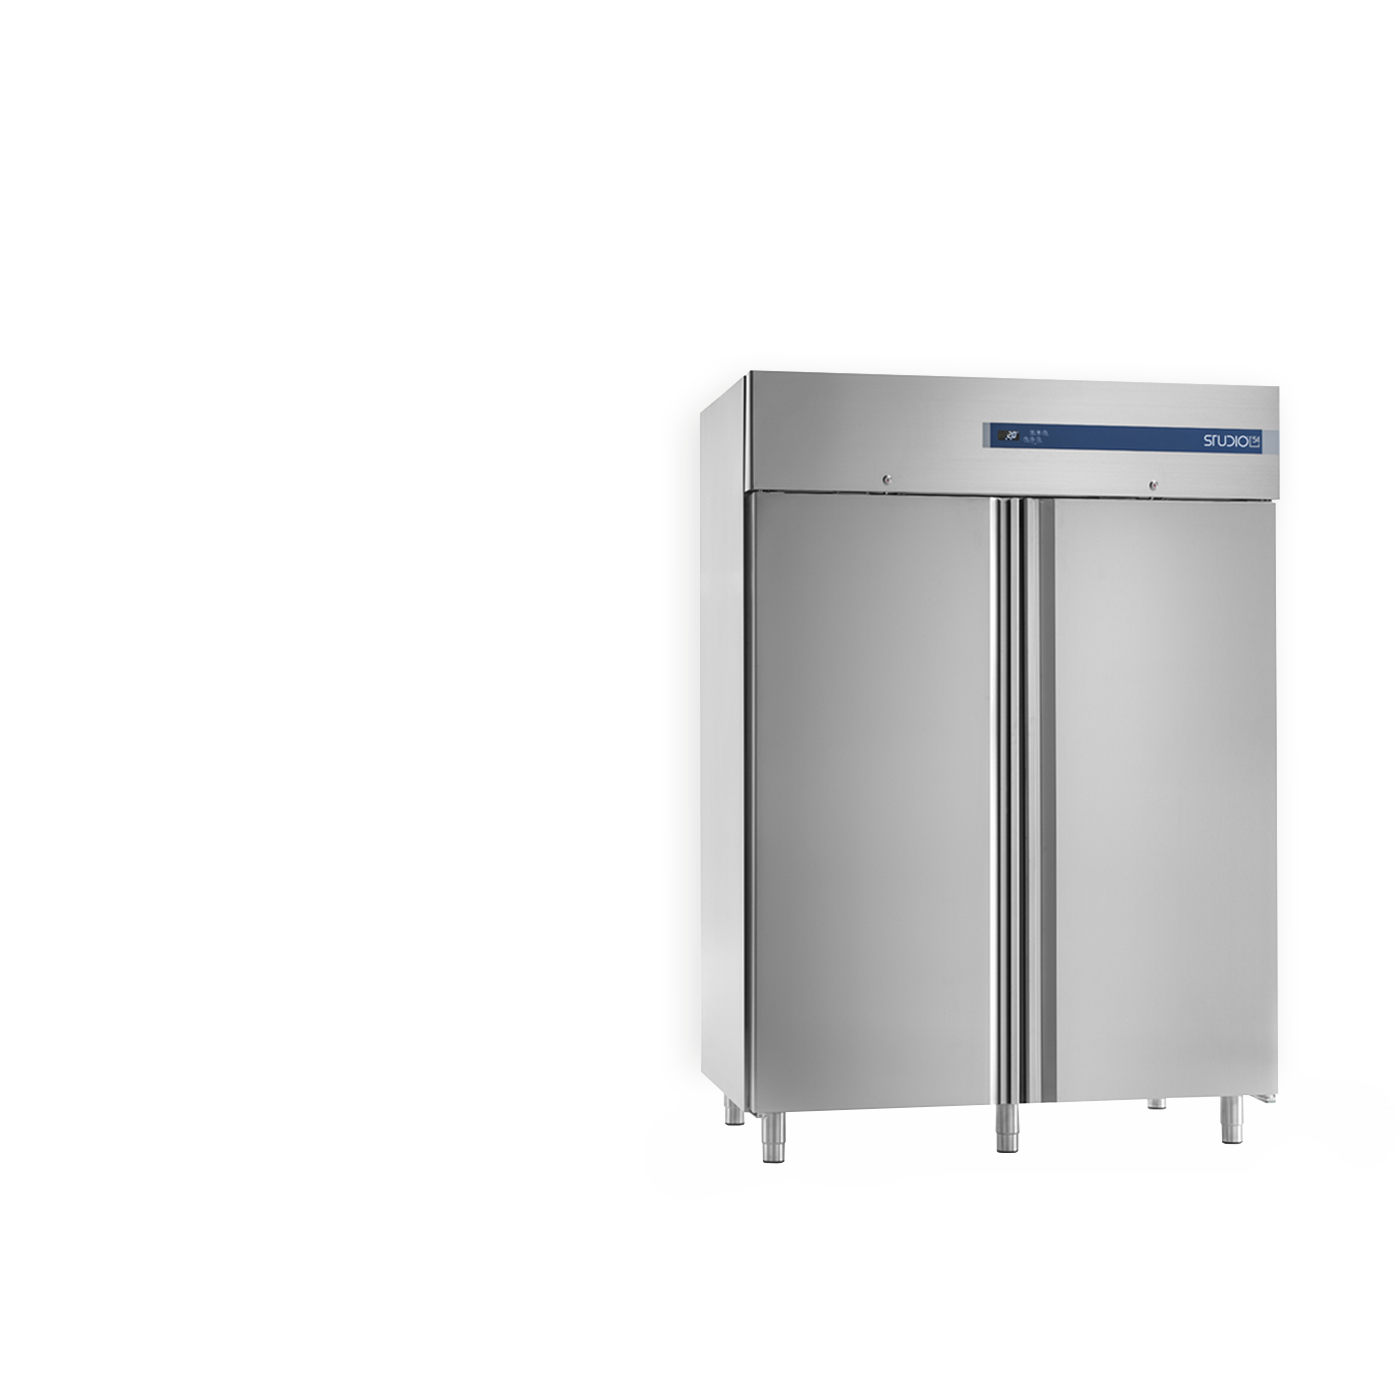 Assistenza e vendita armadi frigoriferi professionali | Frigorservice Due